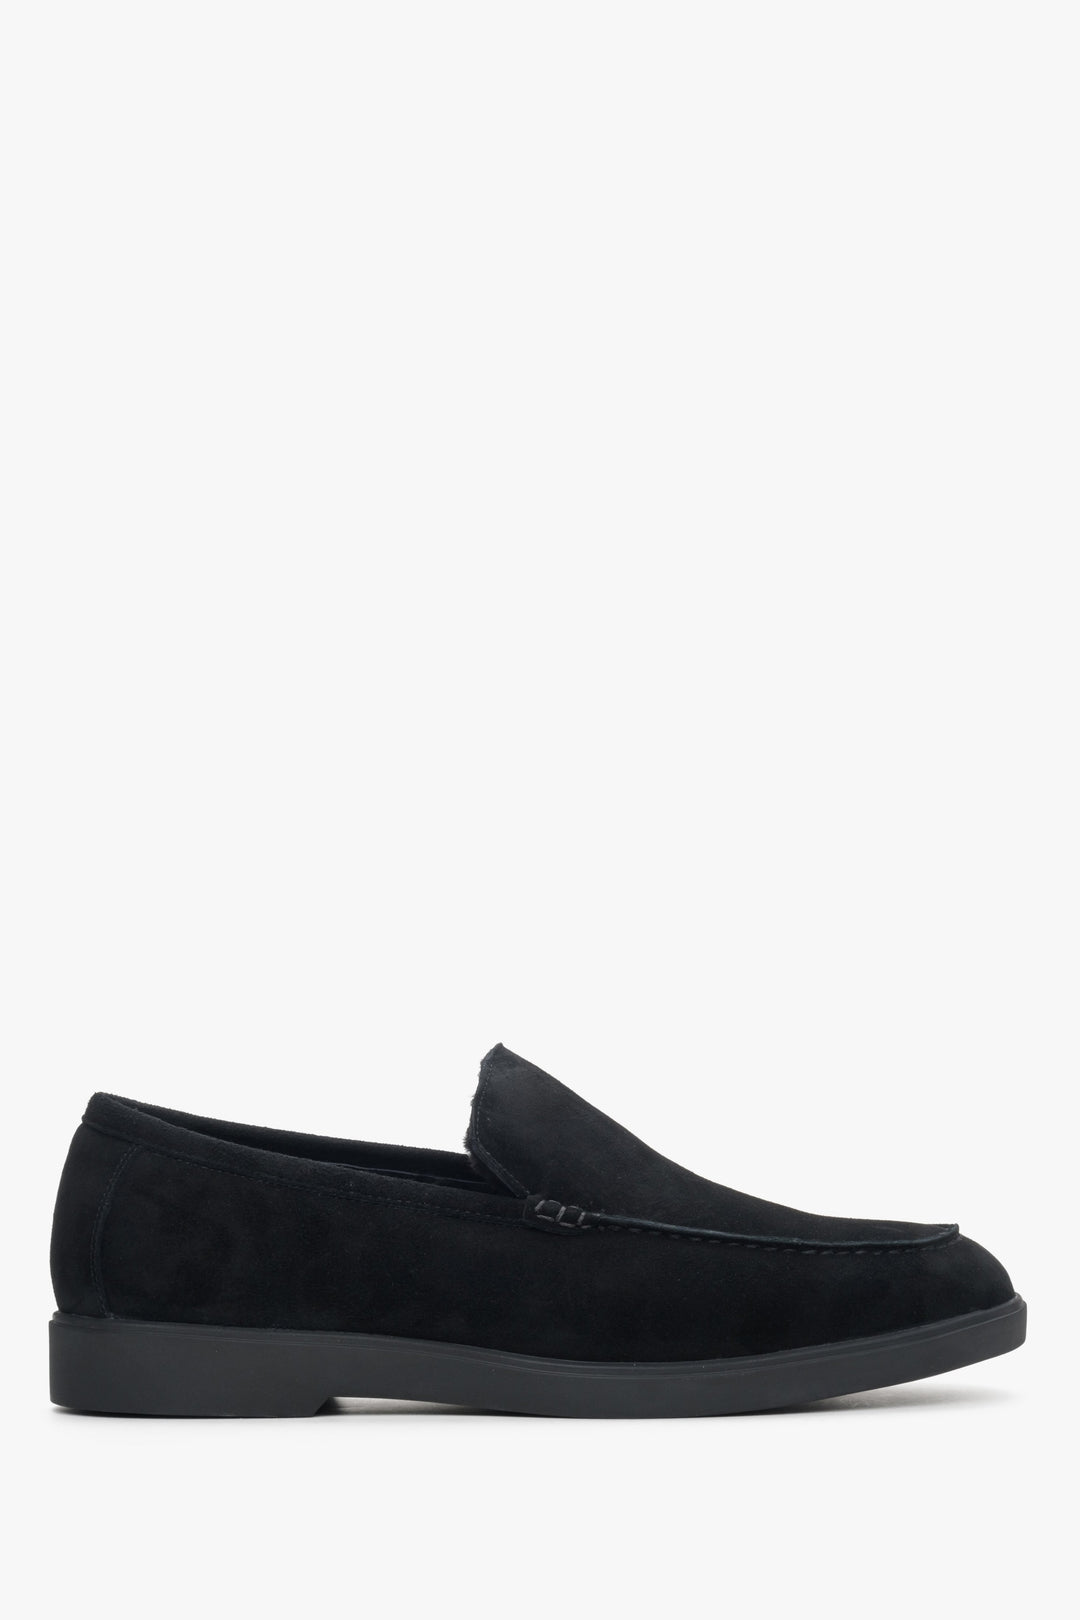 Men's Black Loafers made of Genuine Velour for Winter Estro ER00114125.